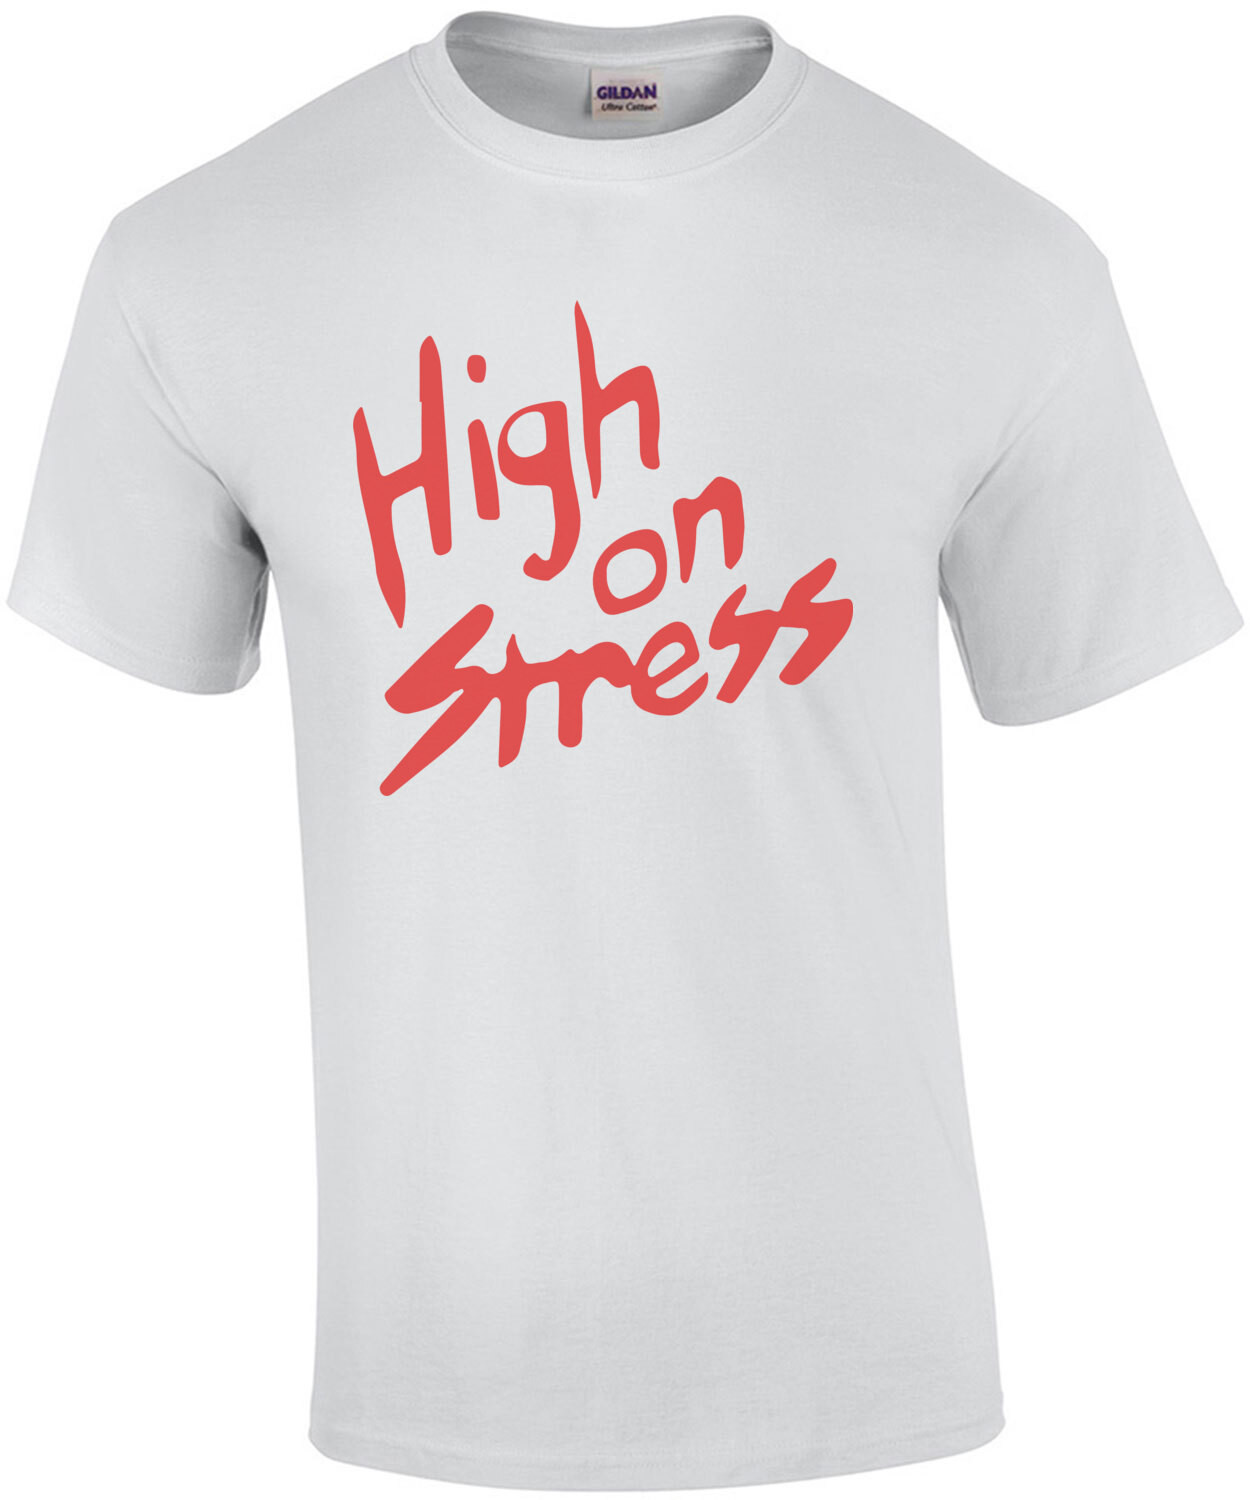 High on Stress - Revenge of the Nerds - 80's T-Shirt